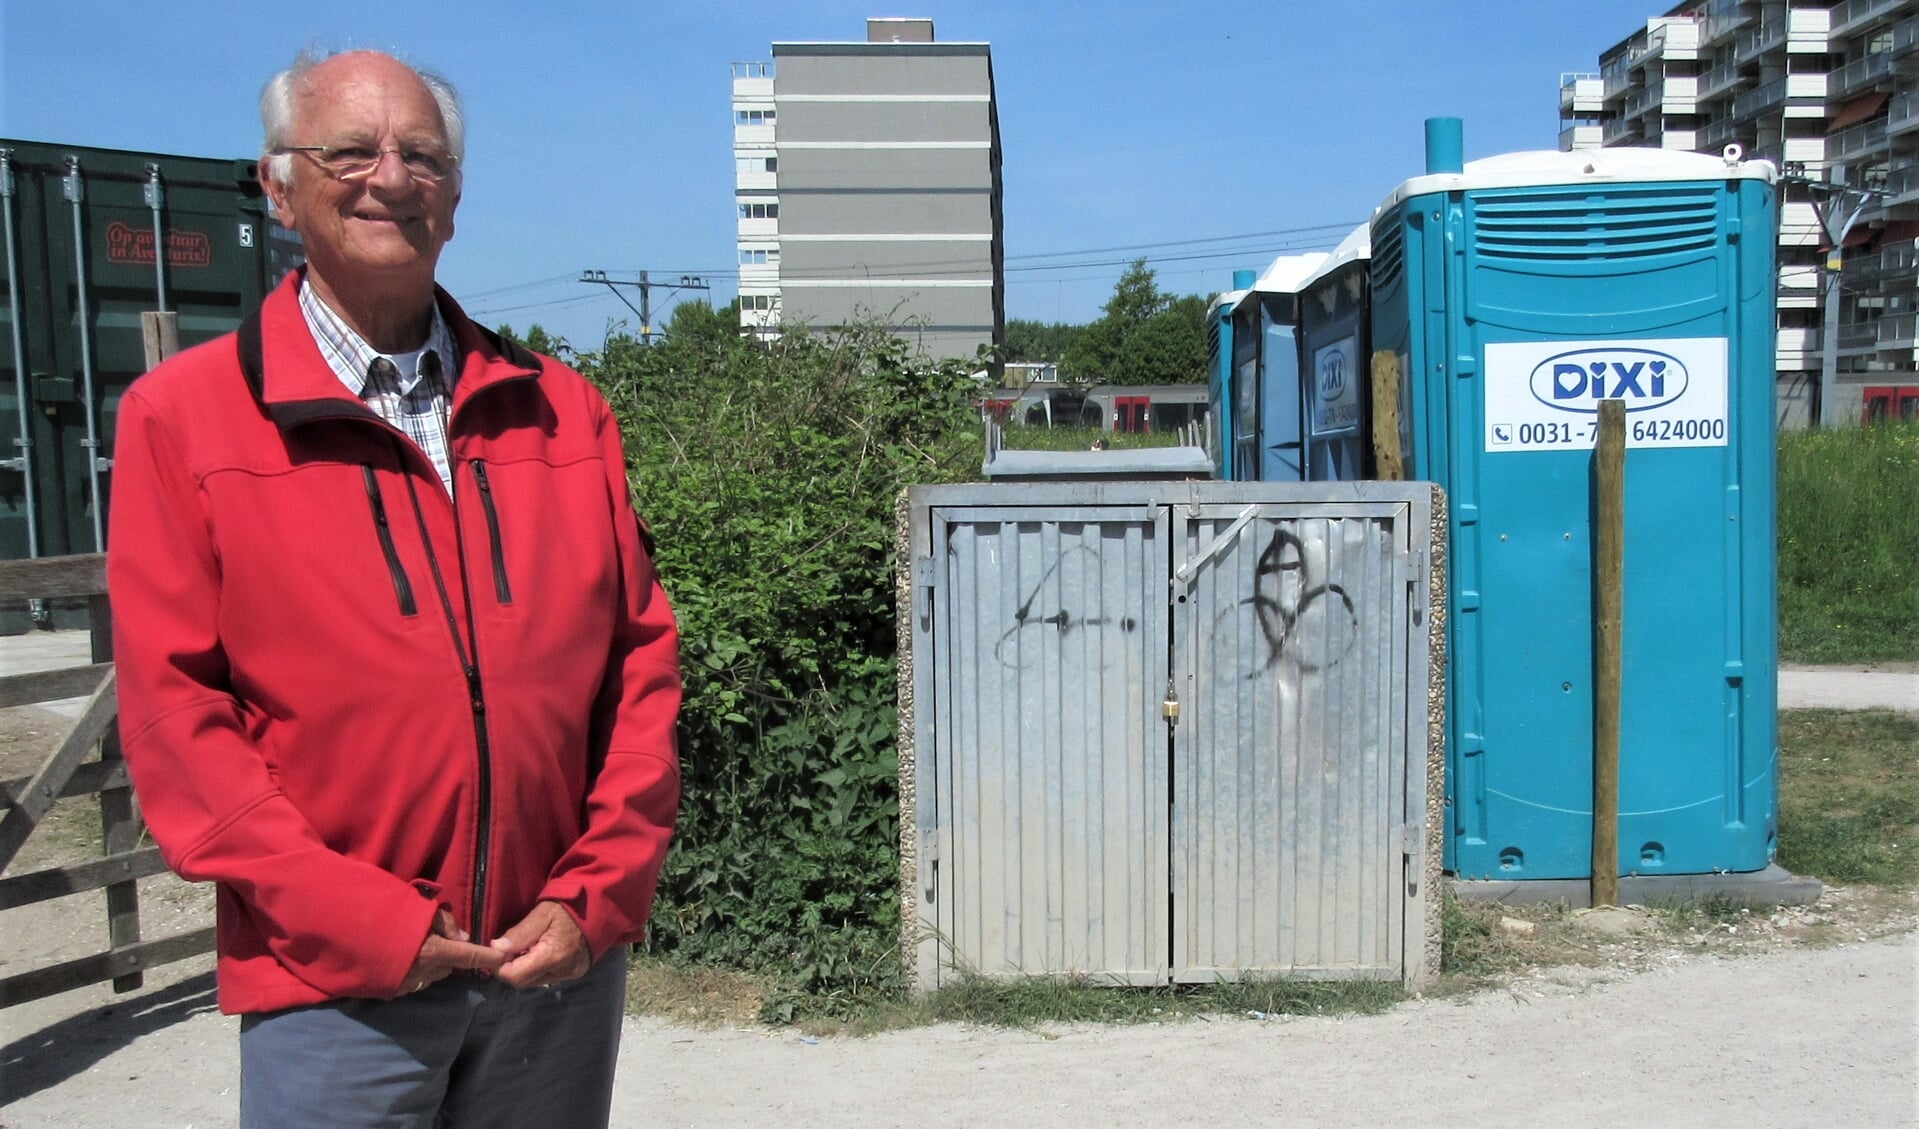 De gemeente moet wat openbare toiletvoorzieningen betreft niet alleen van de horeca afhankelijk willen zijn maar moet ook een zelfreinigend toiletplaatsen in de stad, vindt pleitbezorger Dick Hubert samen met anderen.